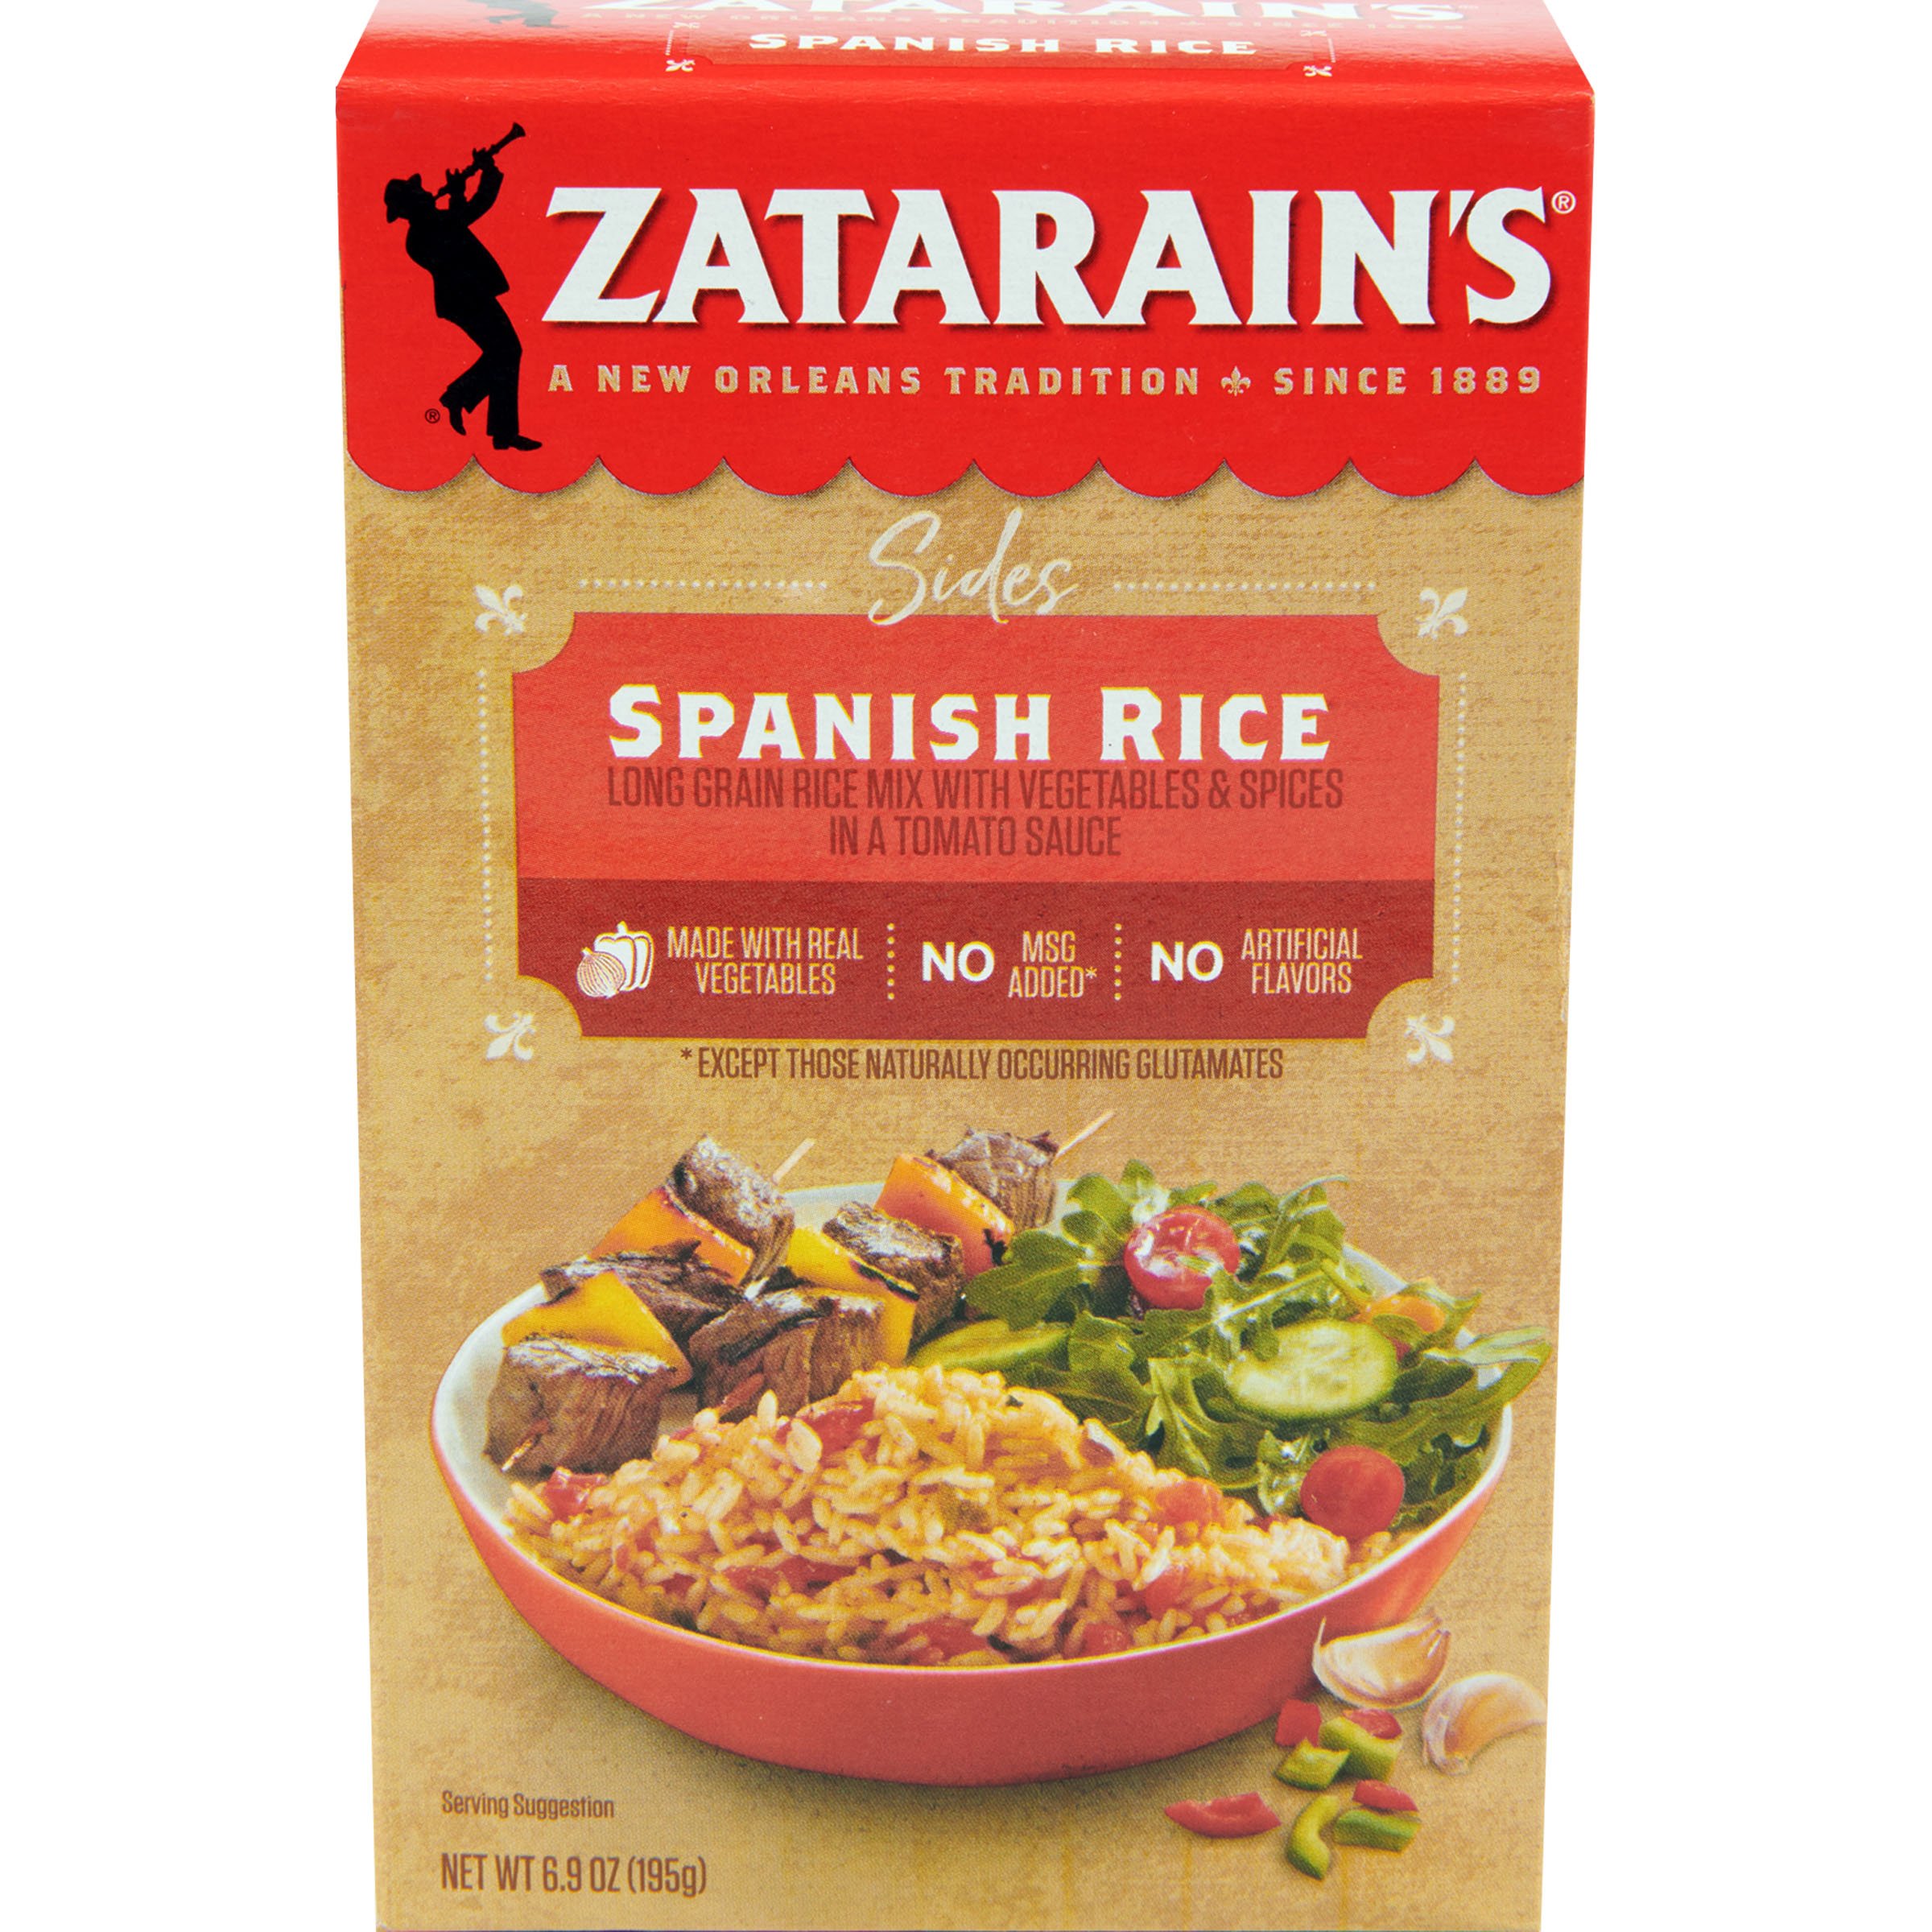 Zatarain's Spanish Rice Mix - Shop Rice & Grains at H-E-B